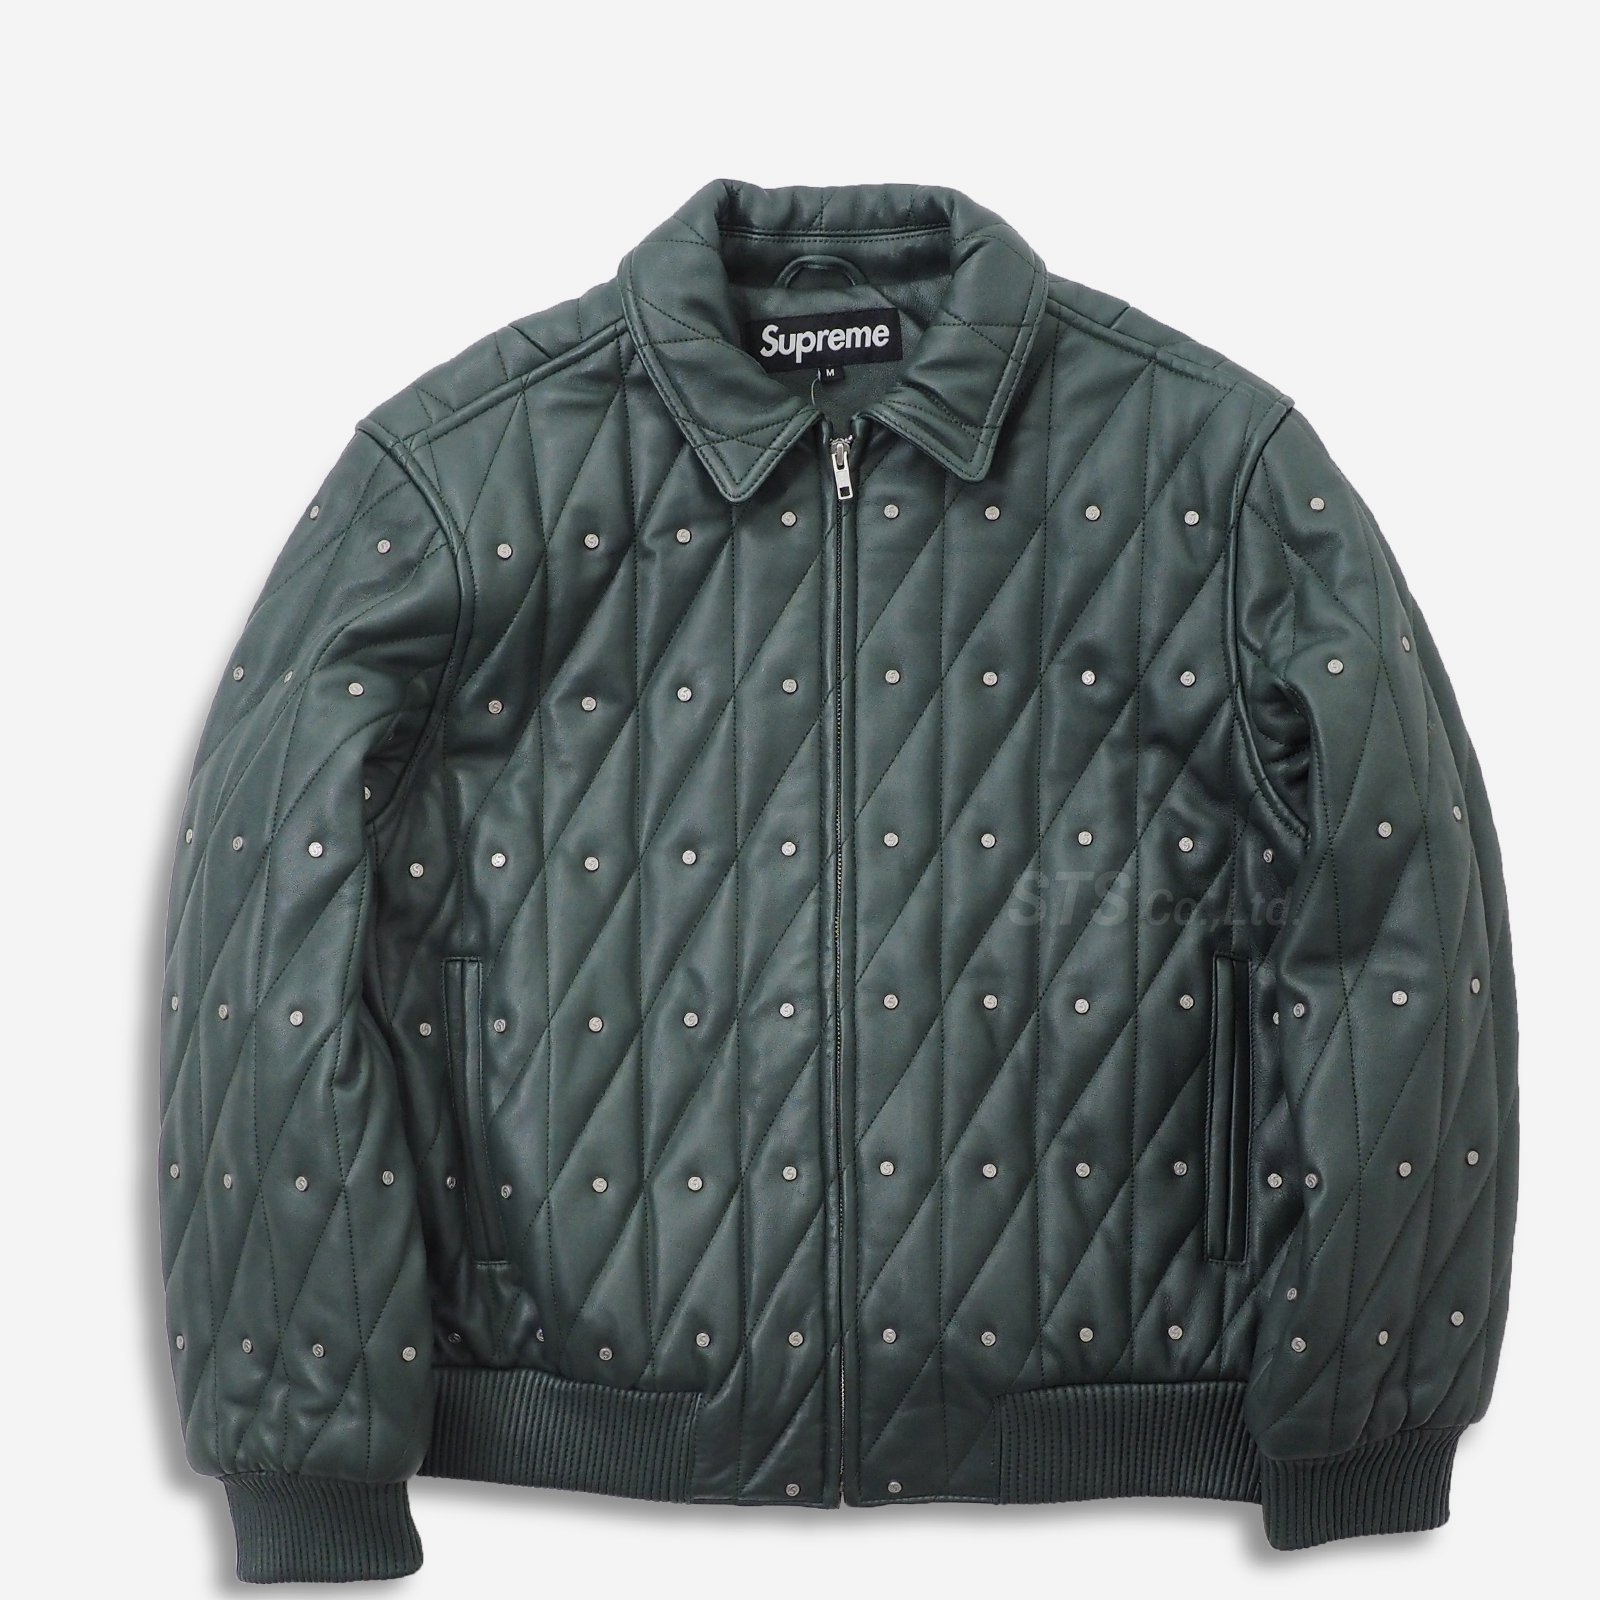 Supreme - Quilted Studded Leather Jacket - ParkSIDER